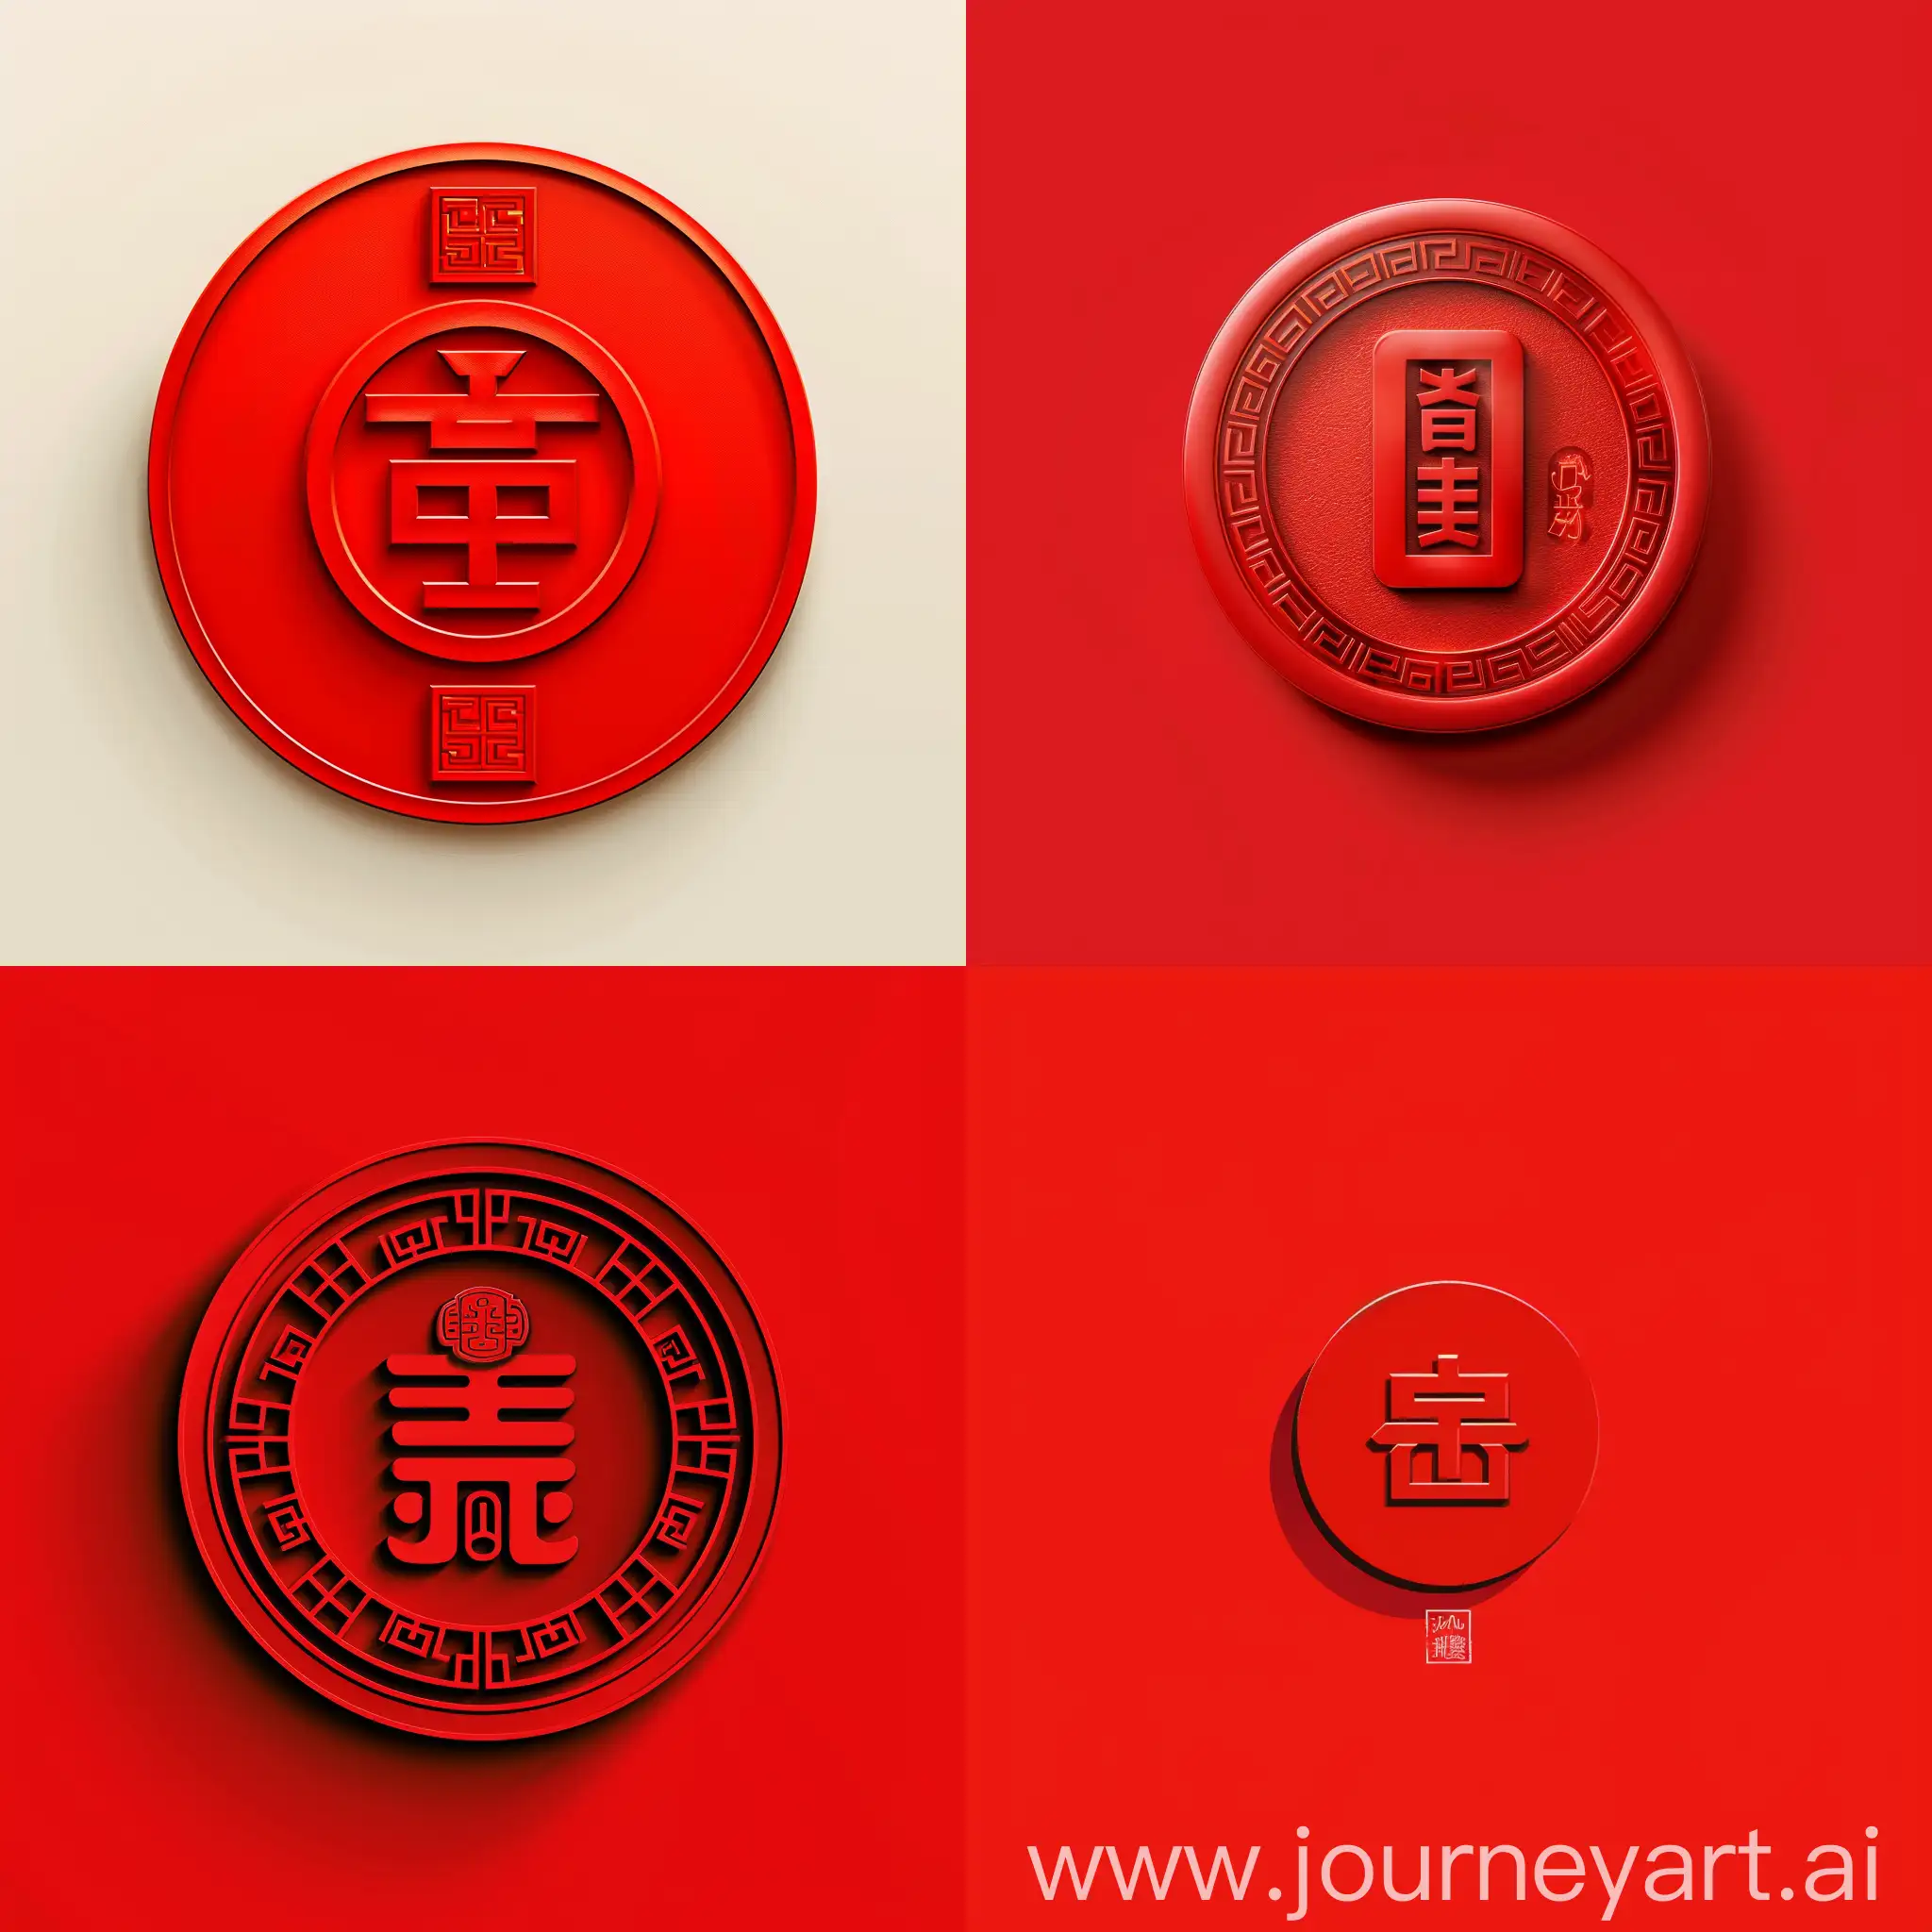 красный  минималистичный логотип для маркетингового агентства в виде китайской монетки на счастье